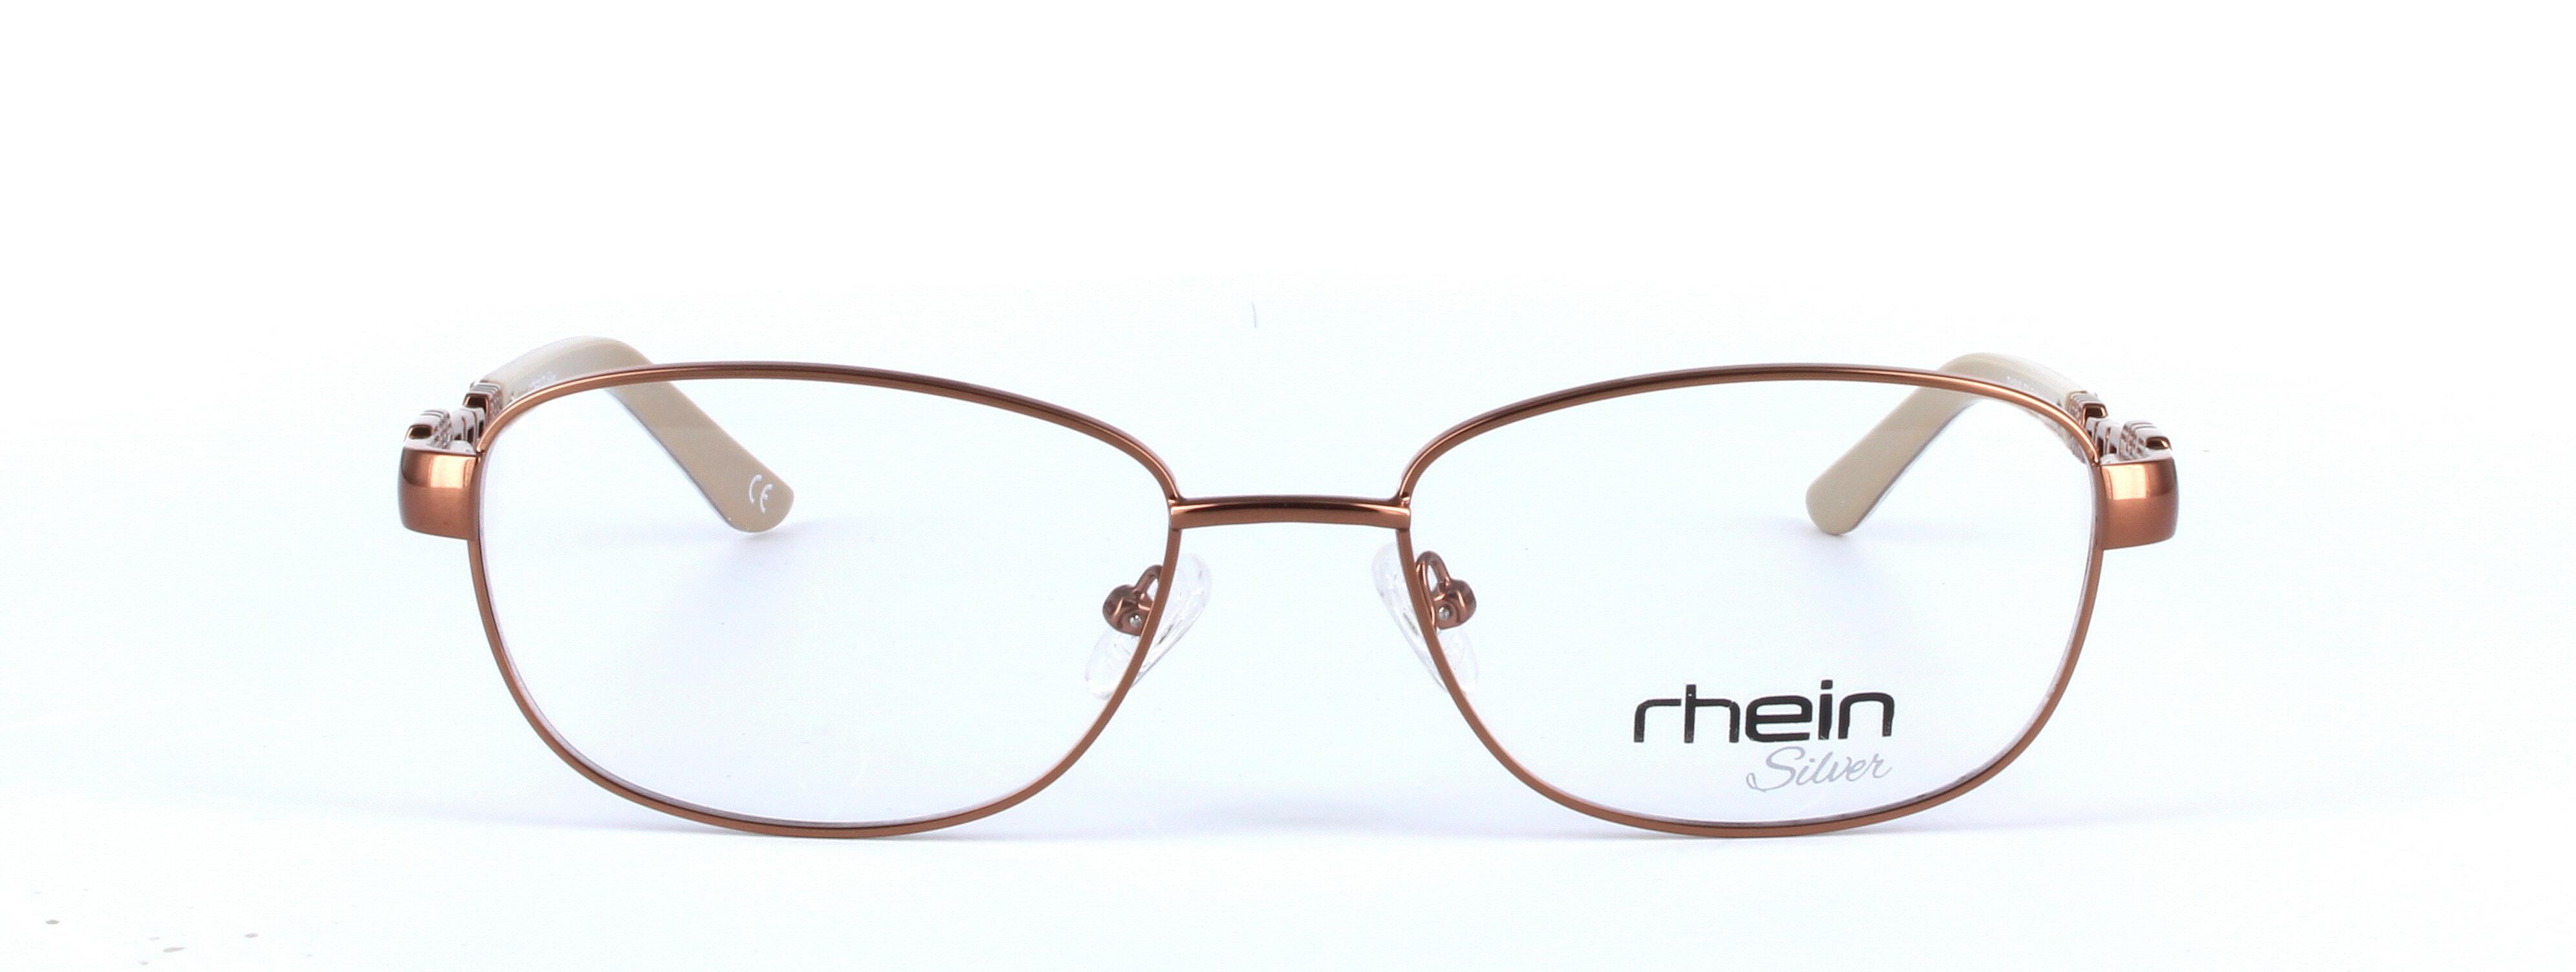 Leila Brown Full Rim Oval Metal Glasses - Image View 5